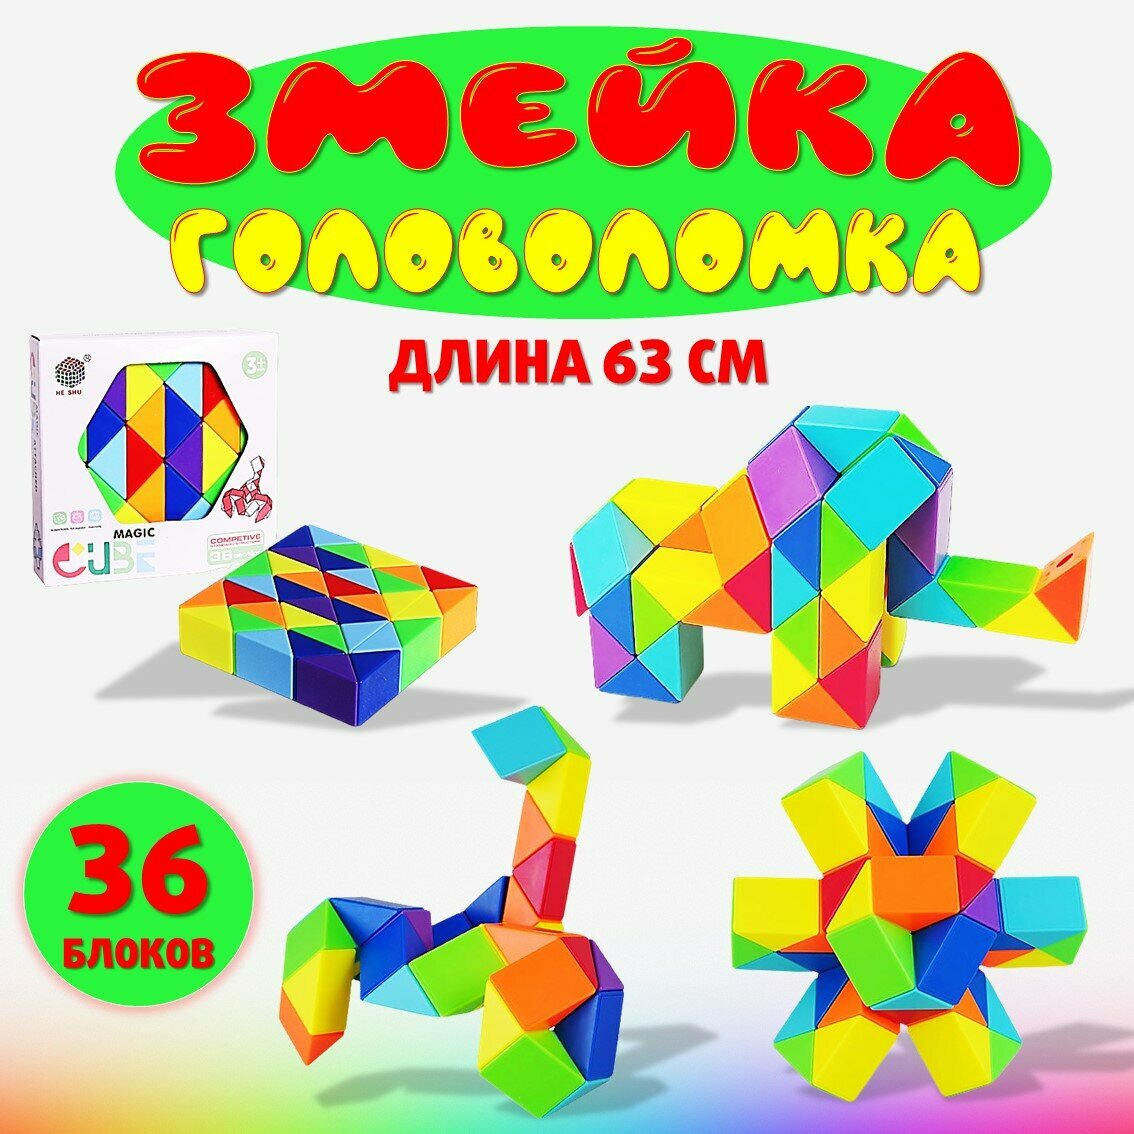 Игрушка головоломка Змейка Рубика, 36 блоков цветная, для детей и взрослых, детские развивающие игры